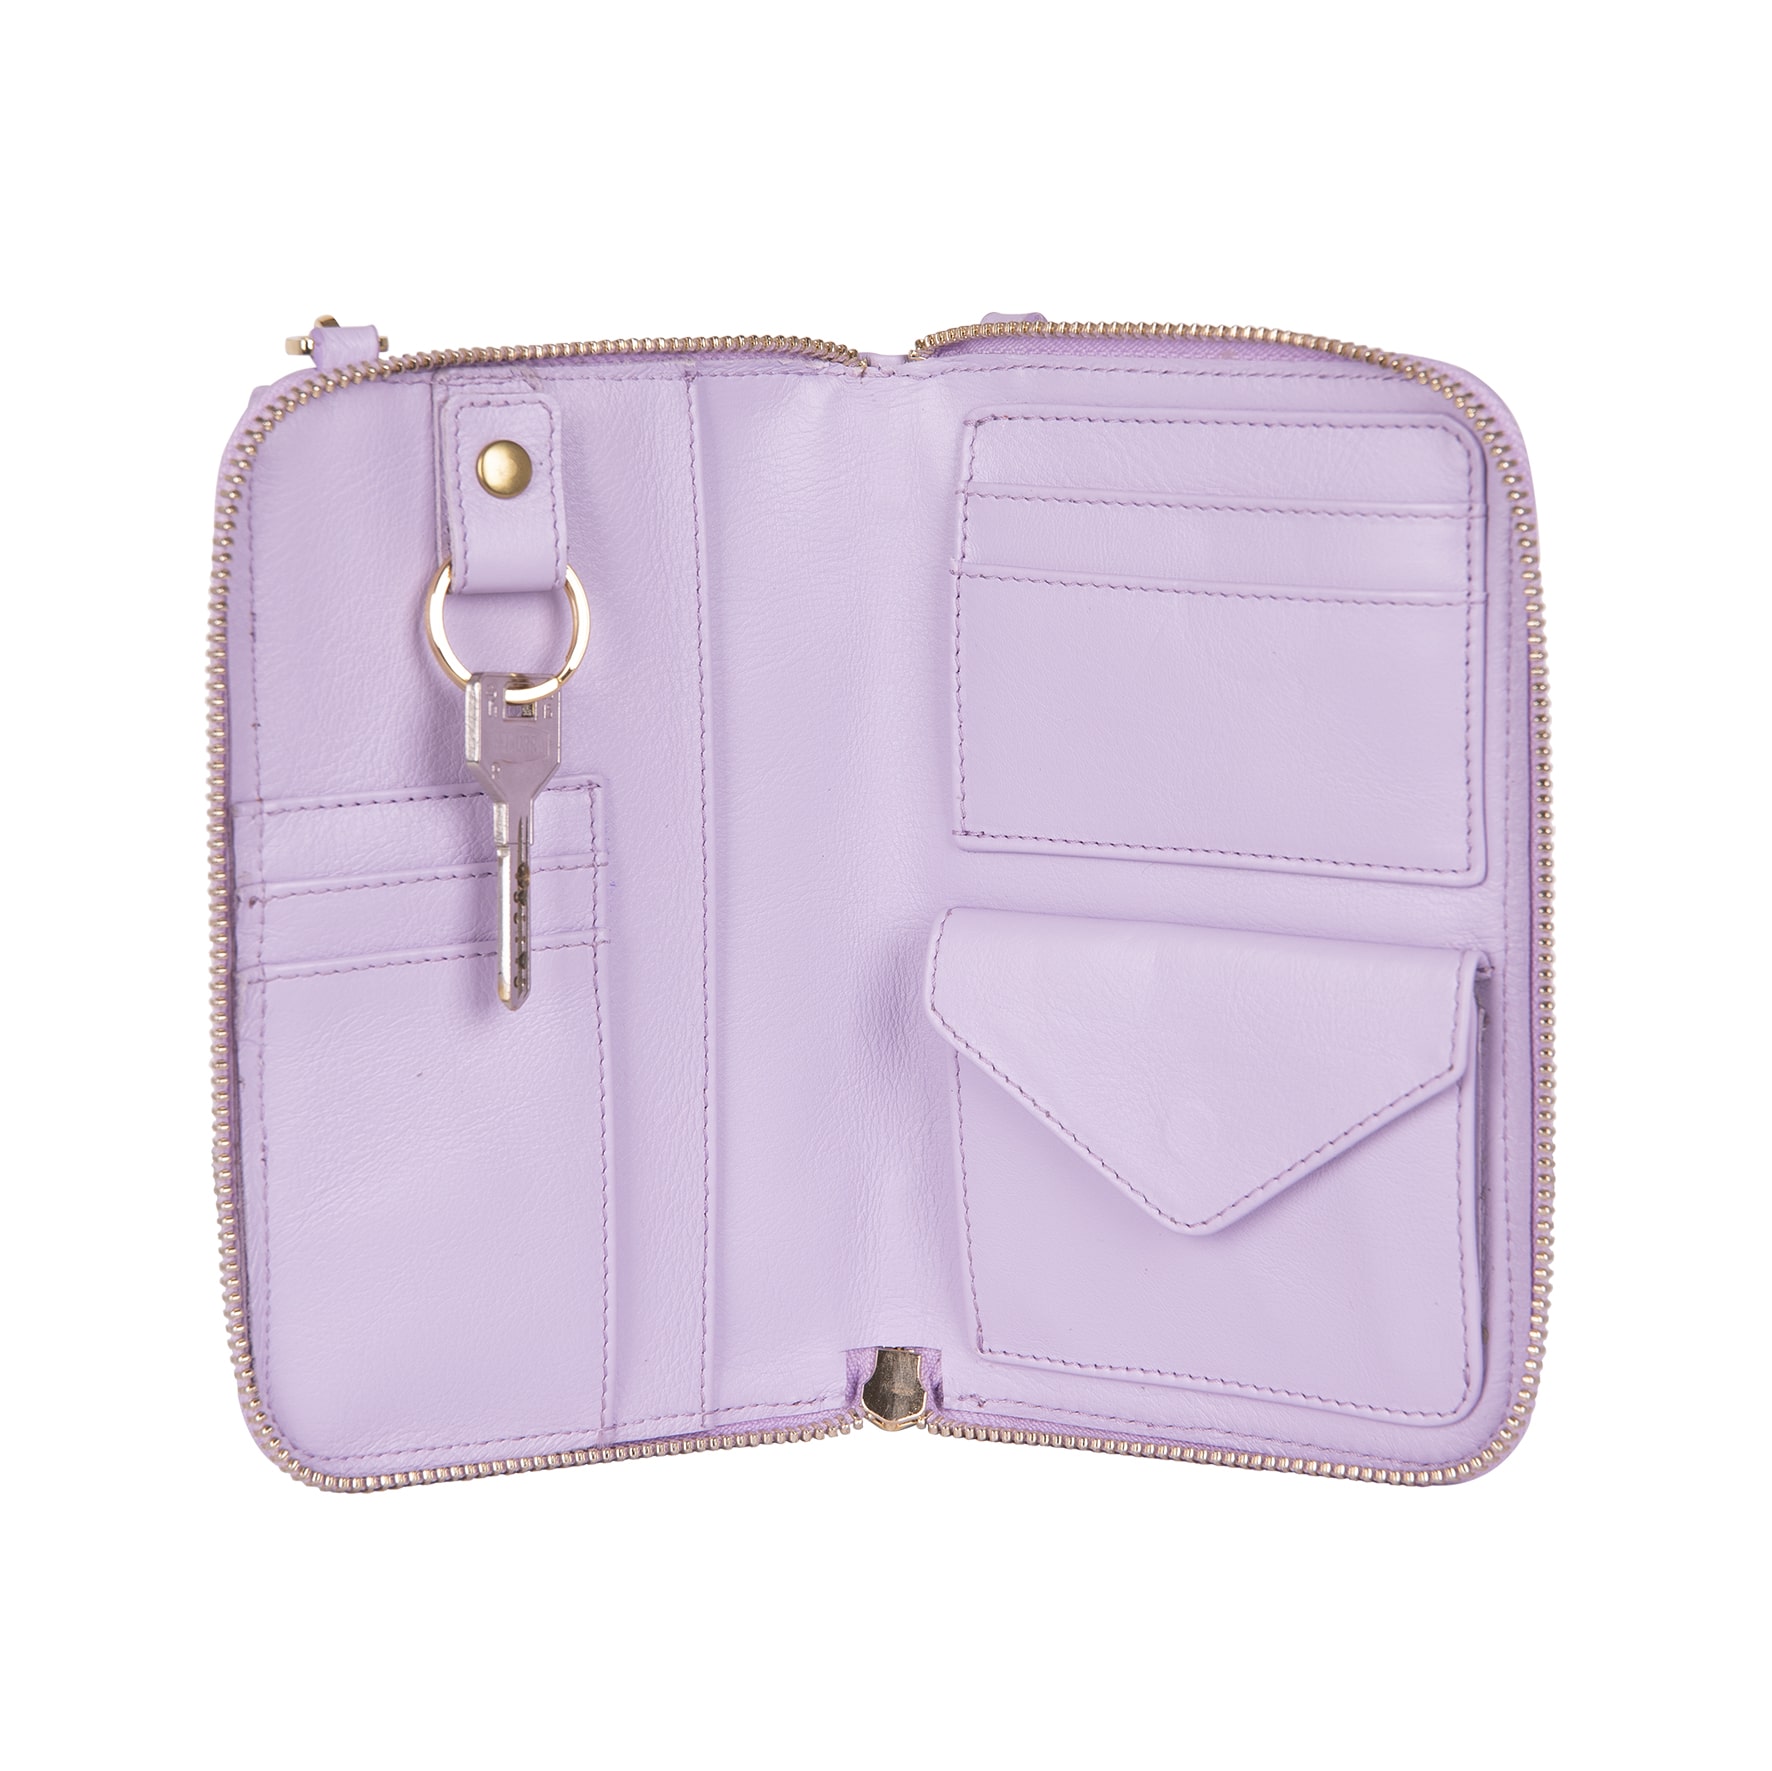 interior Lily bolso de cuero para mujer y smartphone en color lila